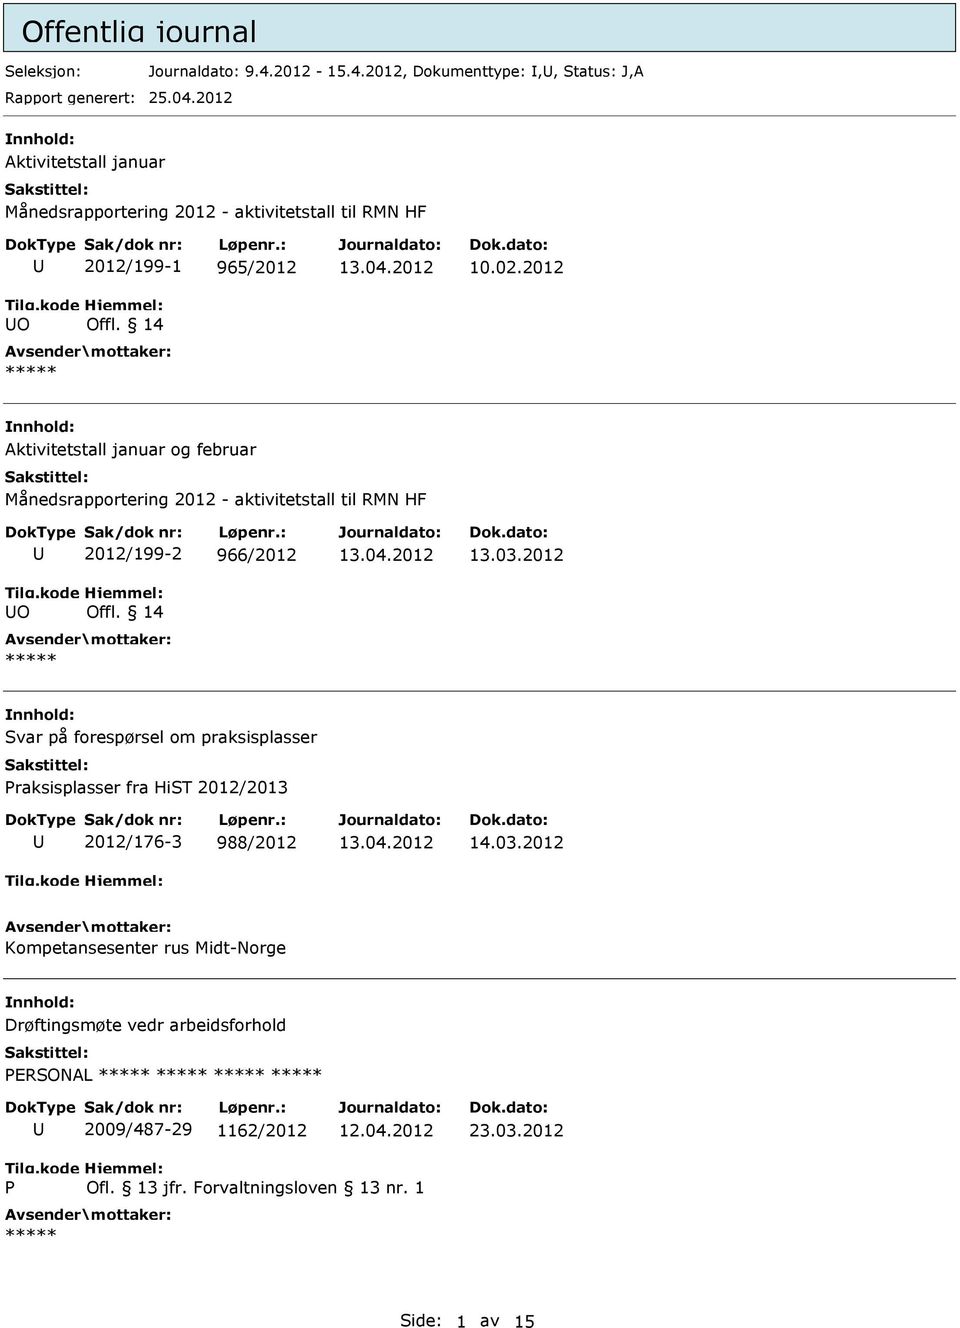 2012 Aktivitetstall januar og februar Månedsrapportering 2012 - aktivitetstall til RMN HF O 2012/199-2 966/2012 Offl. 14 13.03.